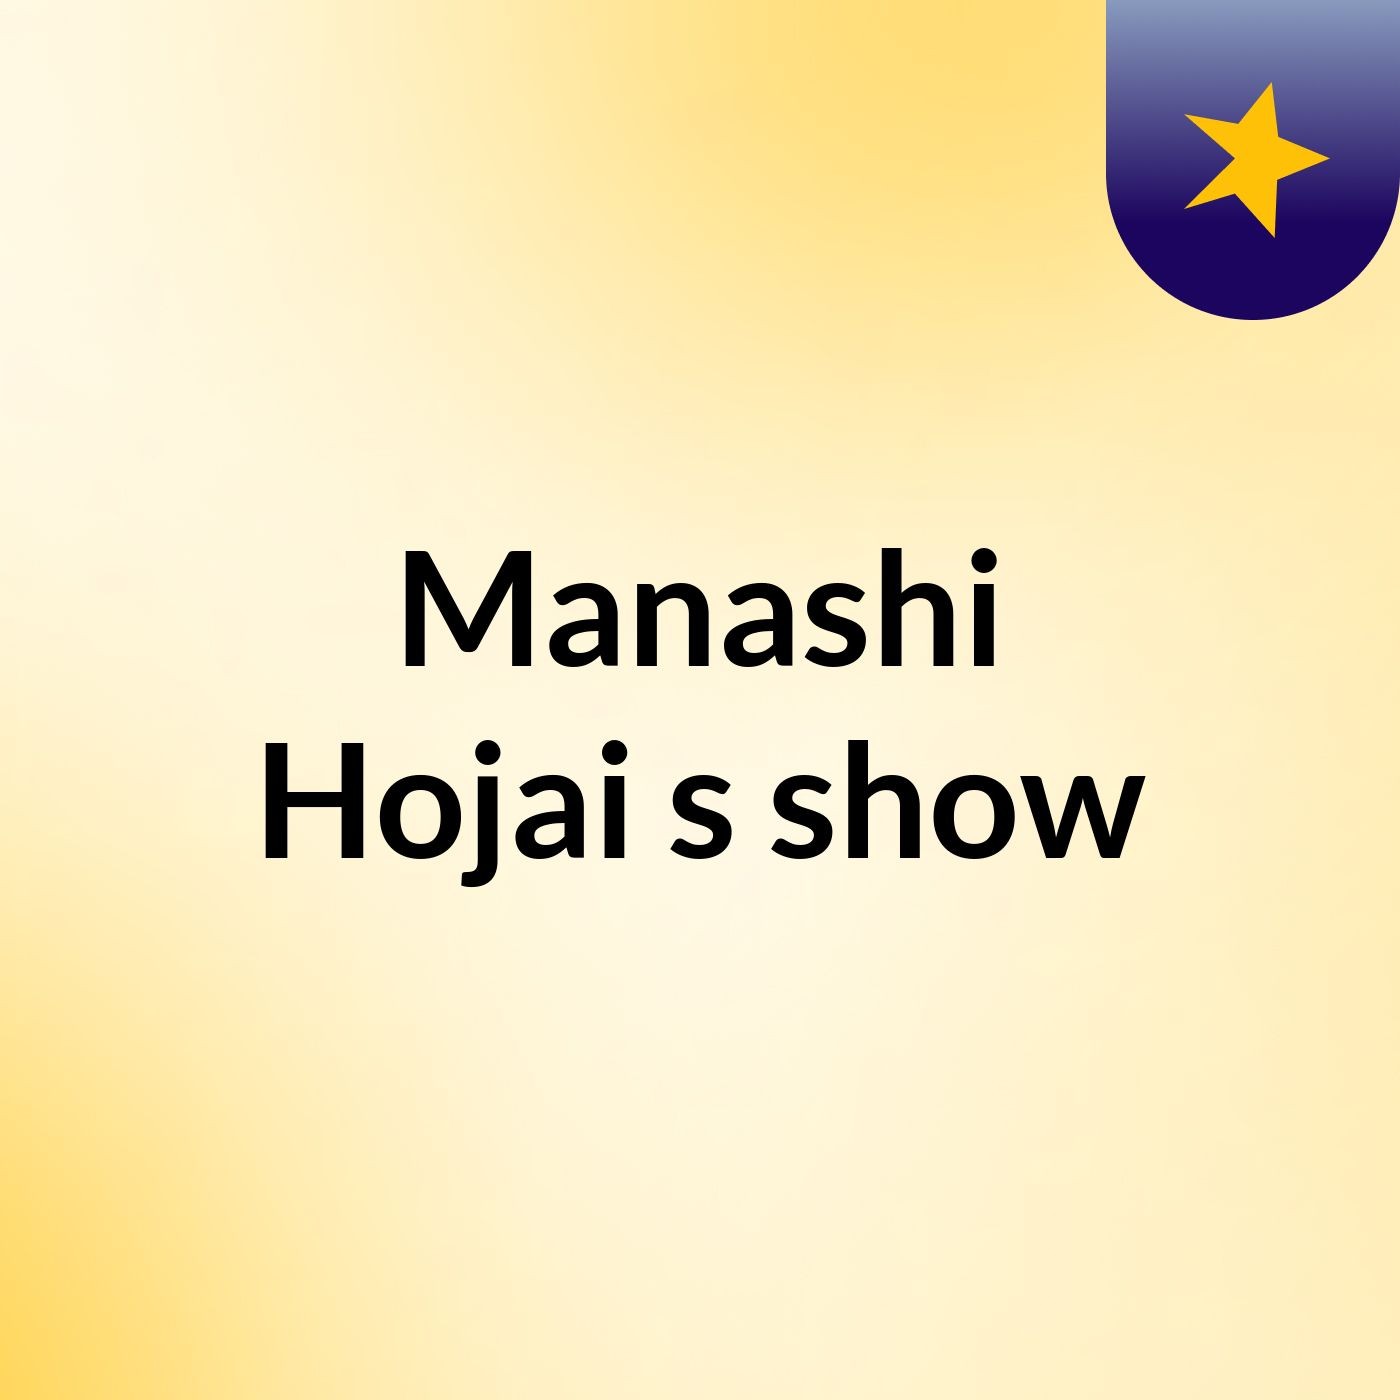 Manashi Hojai's show